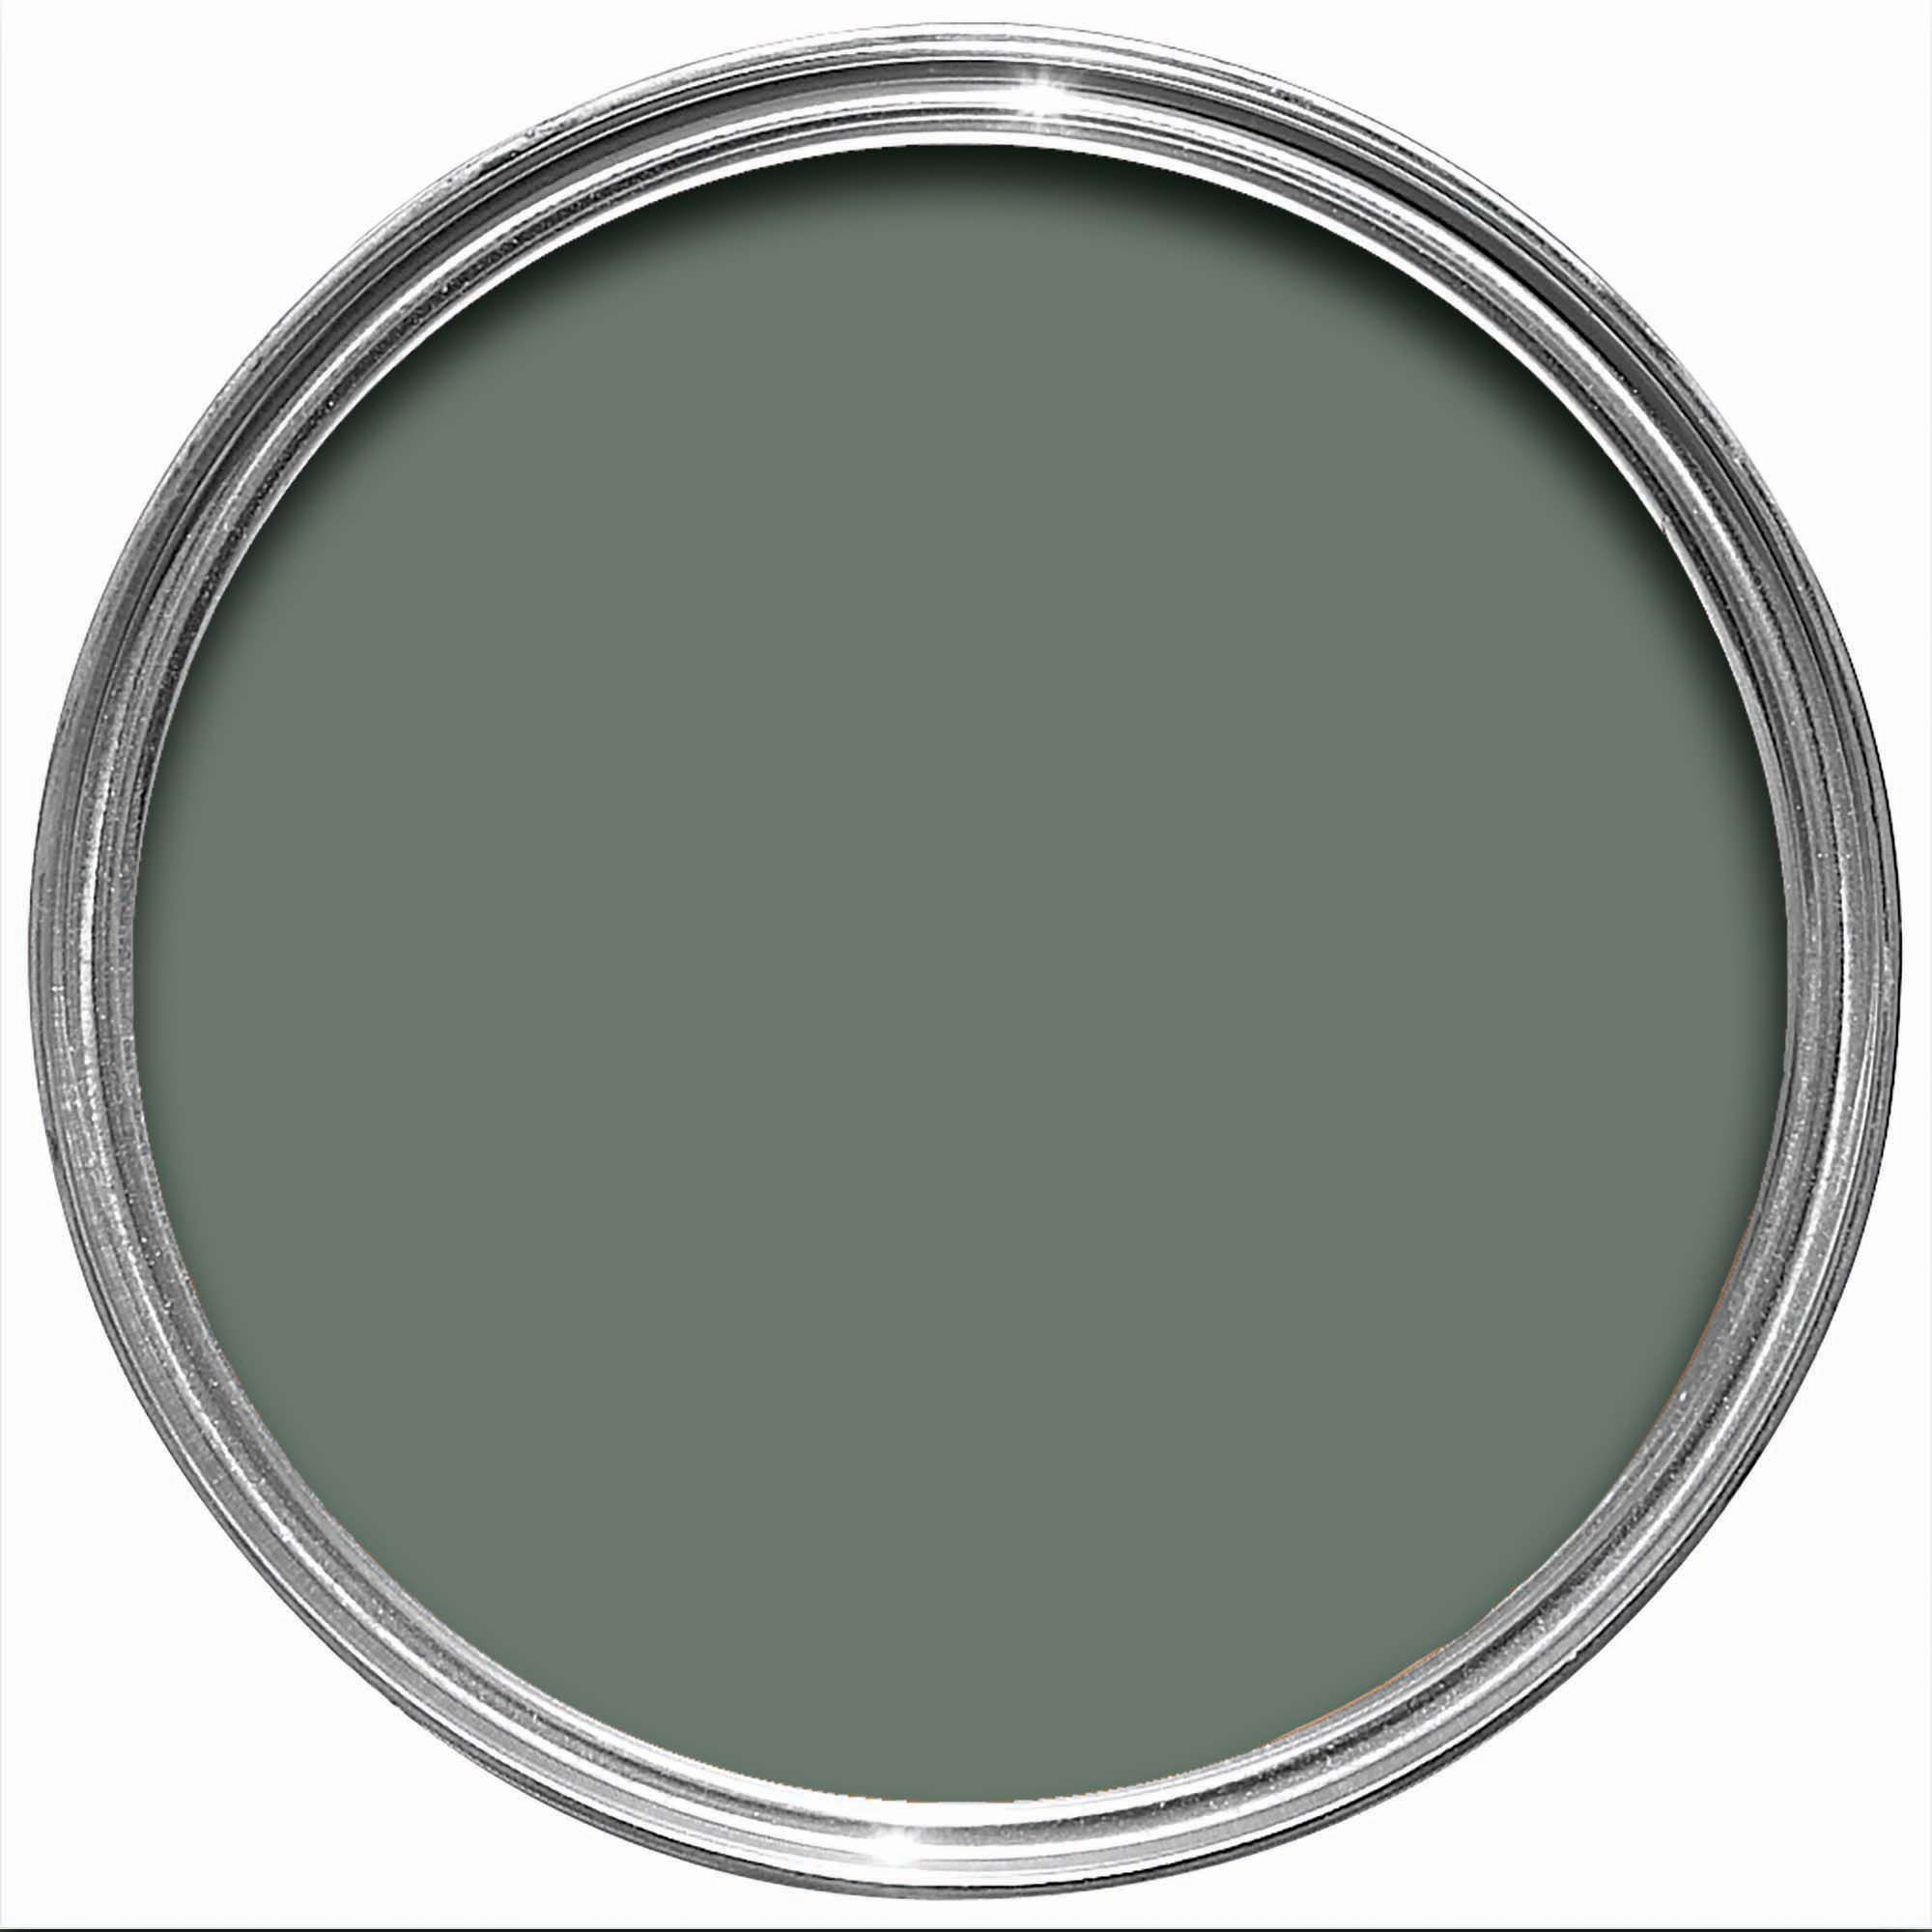 Farrow & Ball Modern Green Smoke No.47 Matt Emulsion paint, 2.5L